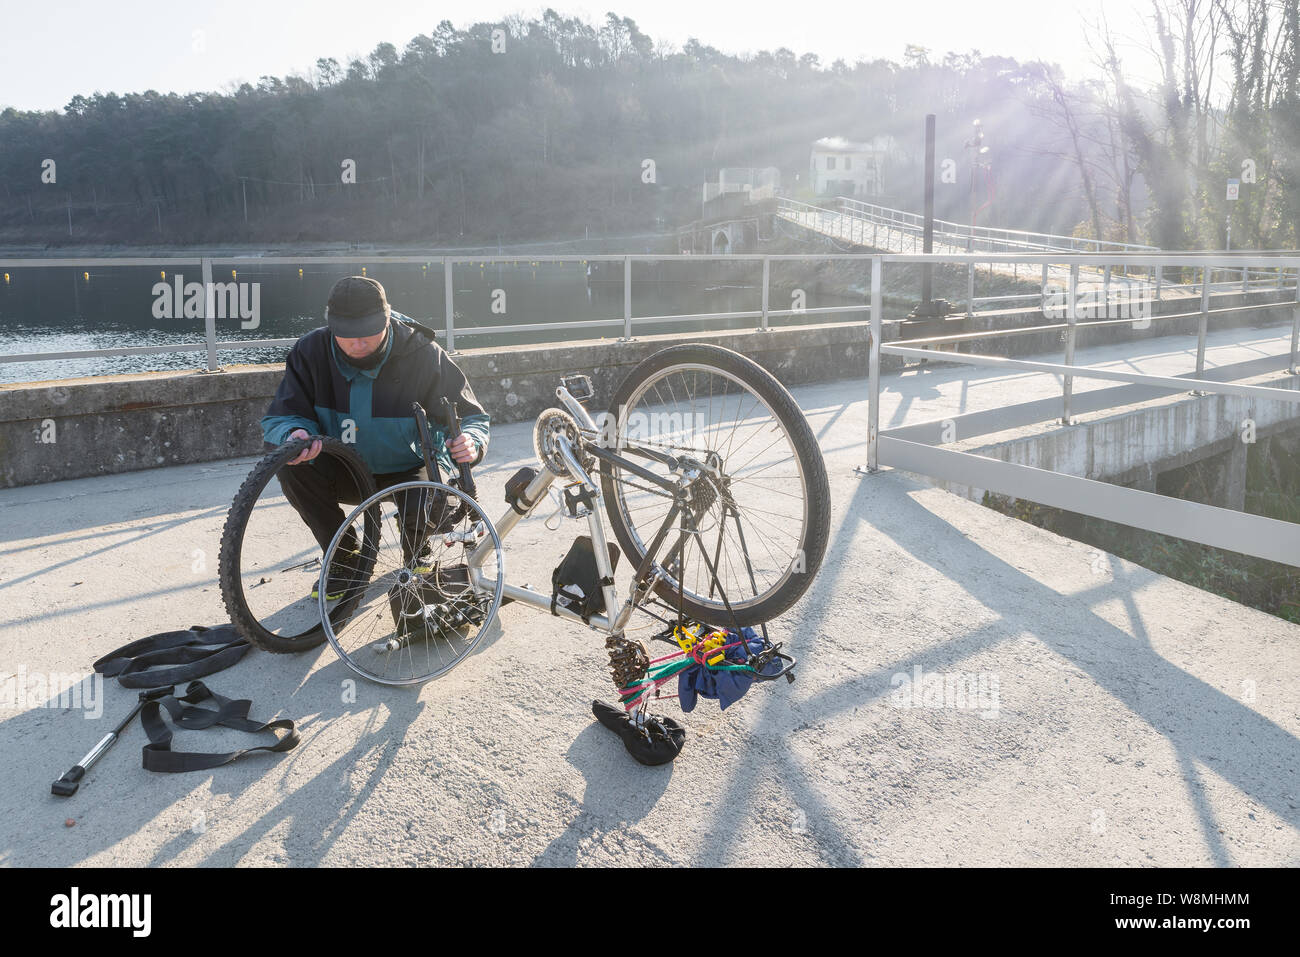 Cycliste homme répare un vélo avec des pneus à plat lors d'un voyage. Concept de dépenses imprévues et mauvaise chance Banque D'Images